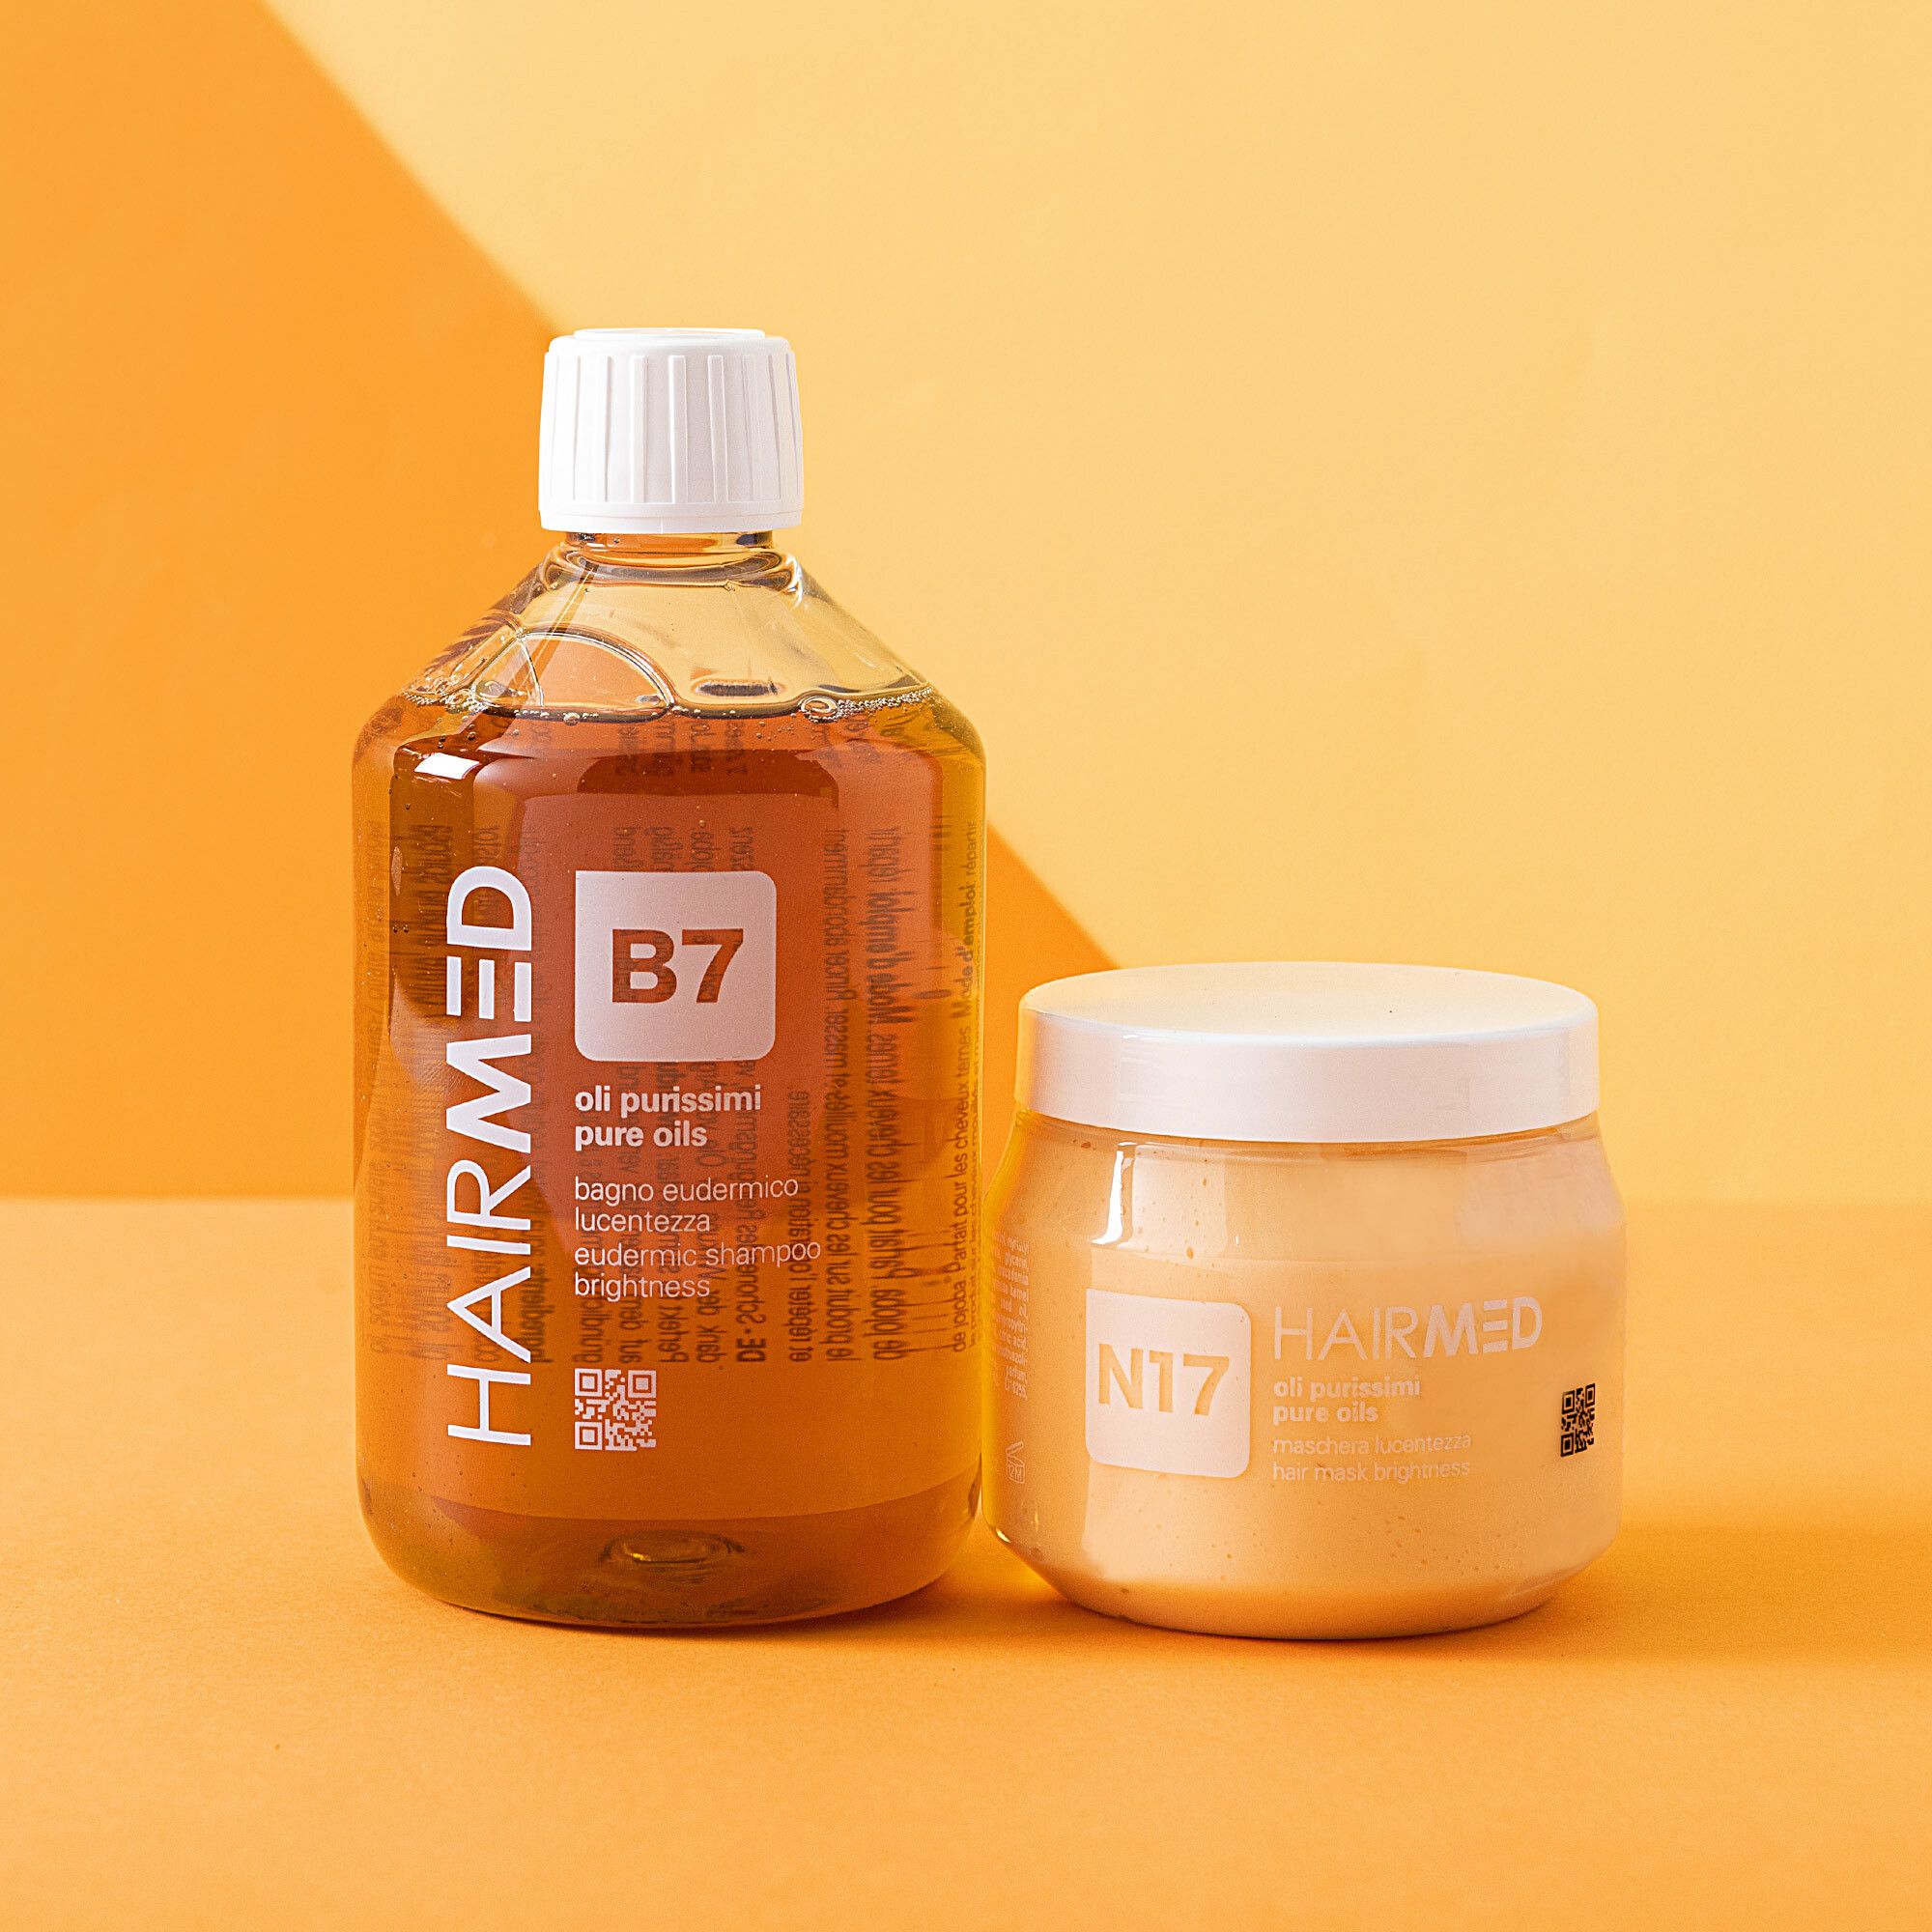 Duo Shampoo delicato B7 e Maschera nutriente N17